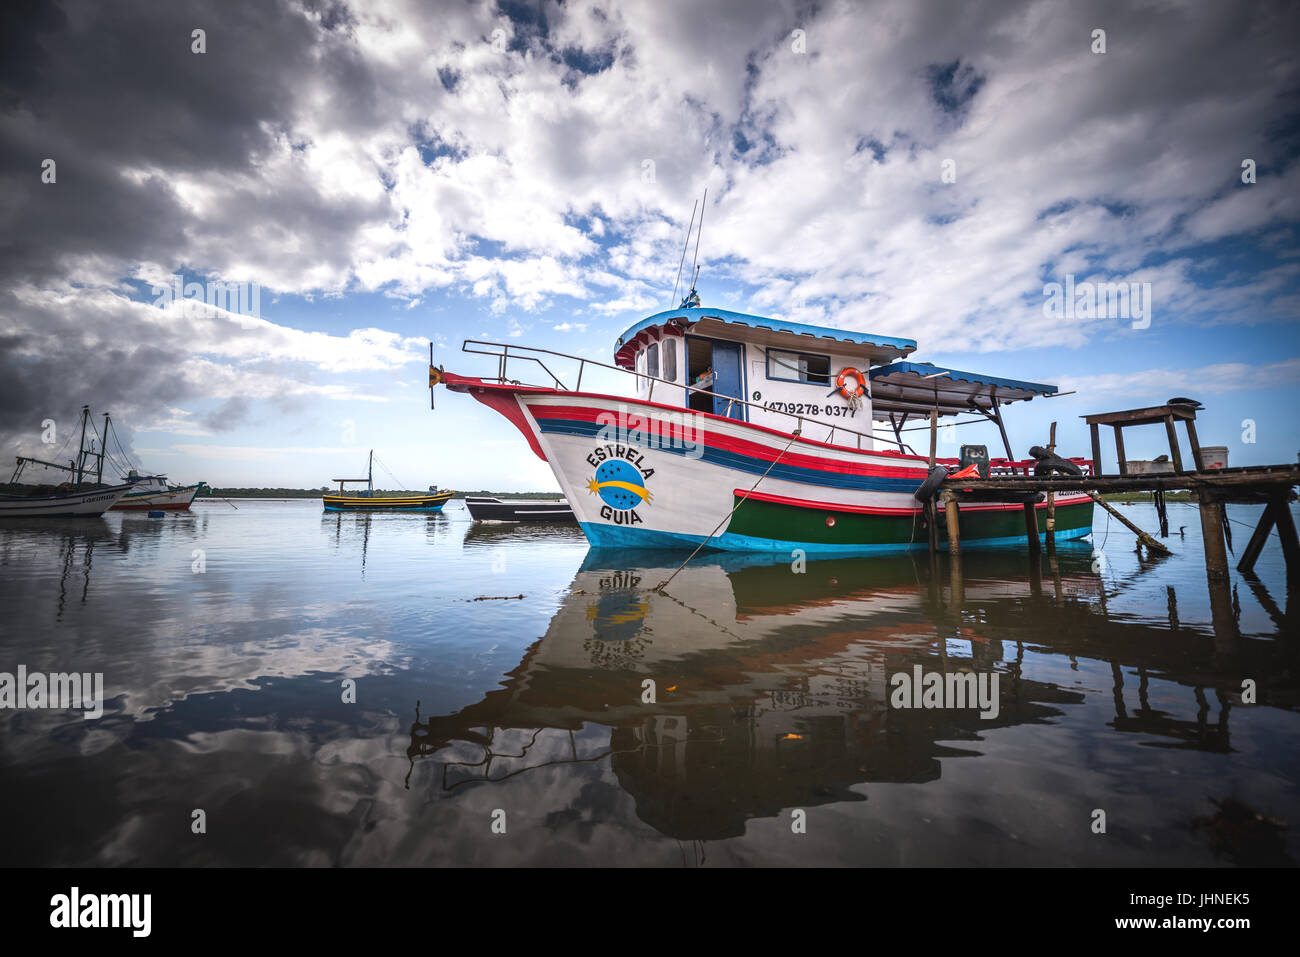 Barra do Sul, Santa Catarina, Brazil - July 8, 2017: Fishing boats moored on the beach. Stock Photo